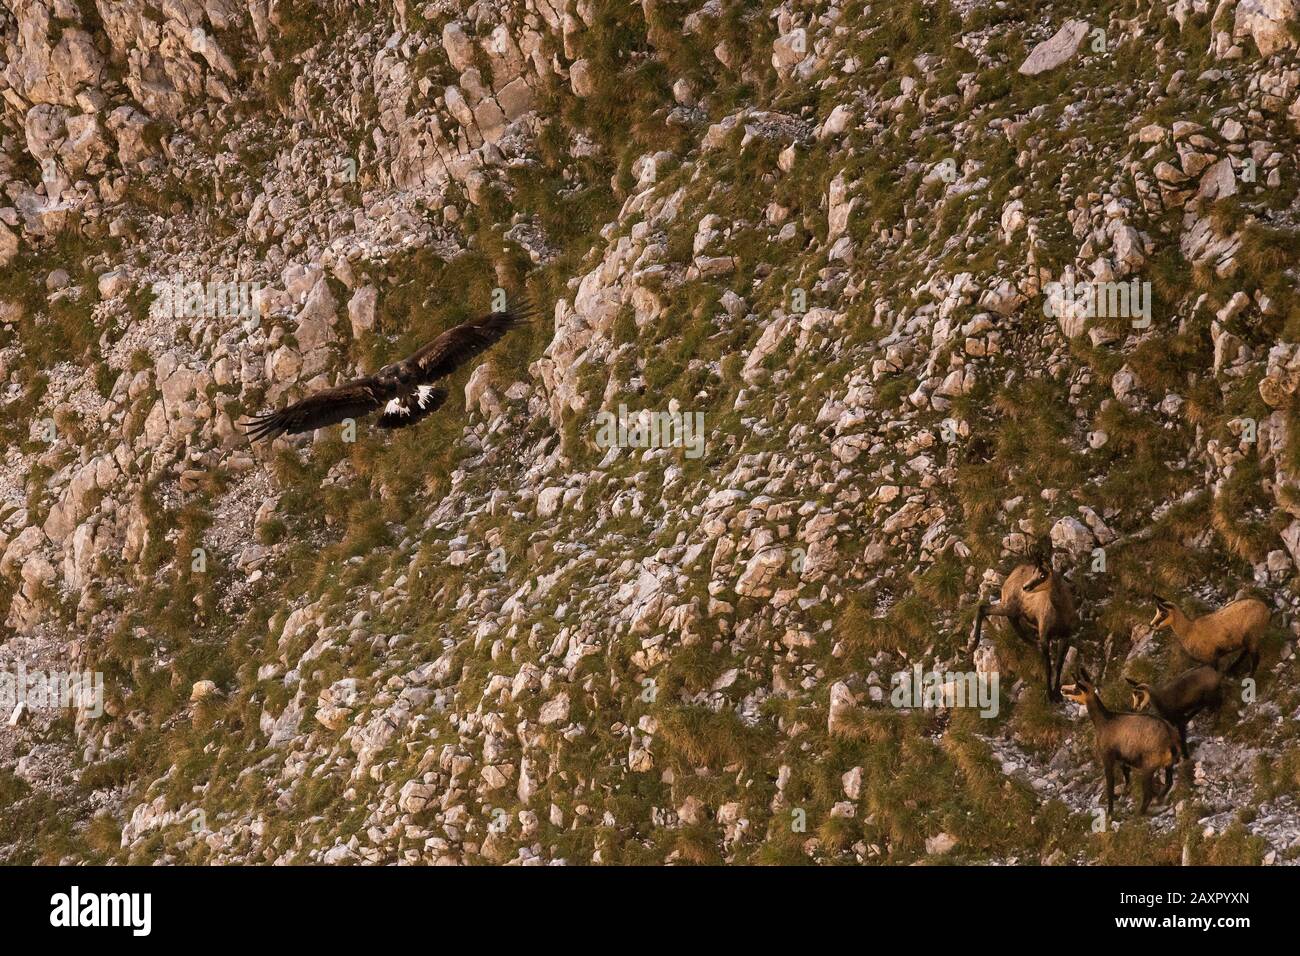 Un'aquila dorata vola su un gruppo di camoscio, che prendono con attenzione il loro cucciolo nel mezzo. Foto Stock